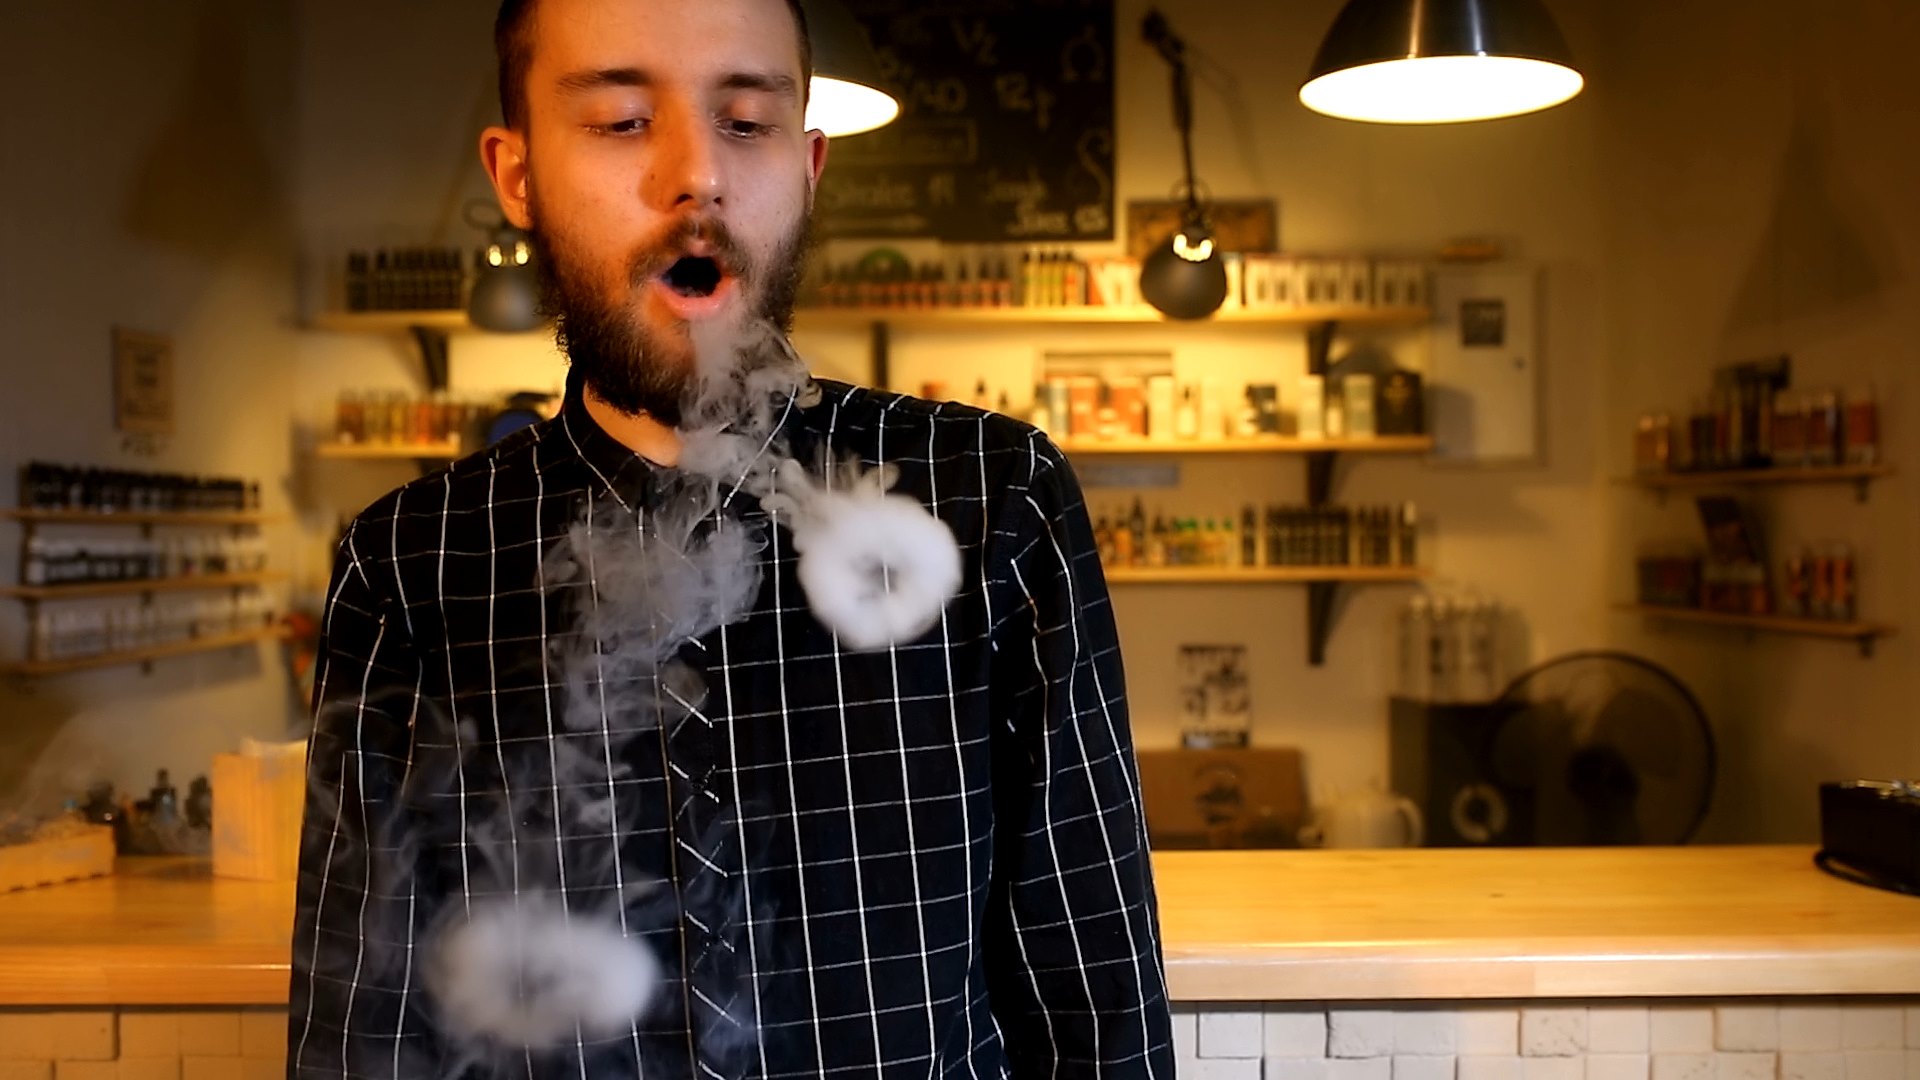 dødsfald: Person død efter brug af e-cigaret! Esbjerg lokale nyheder